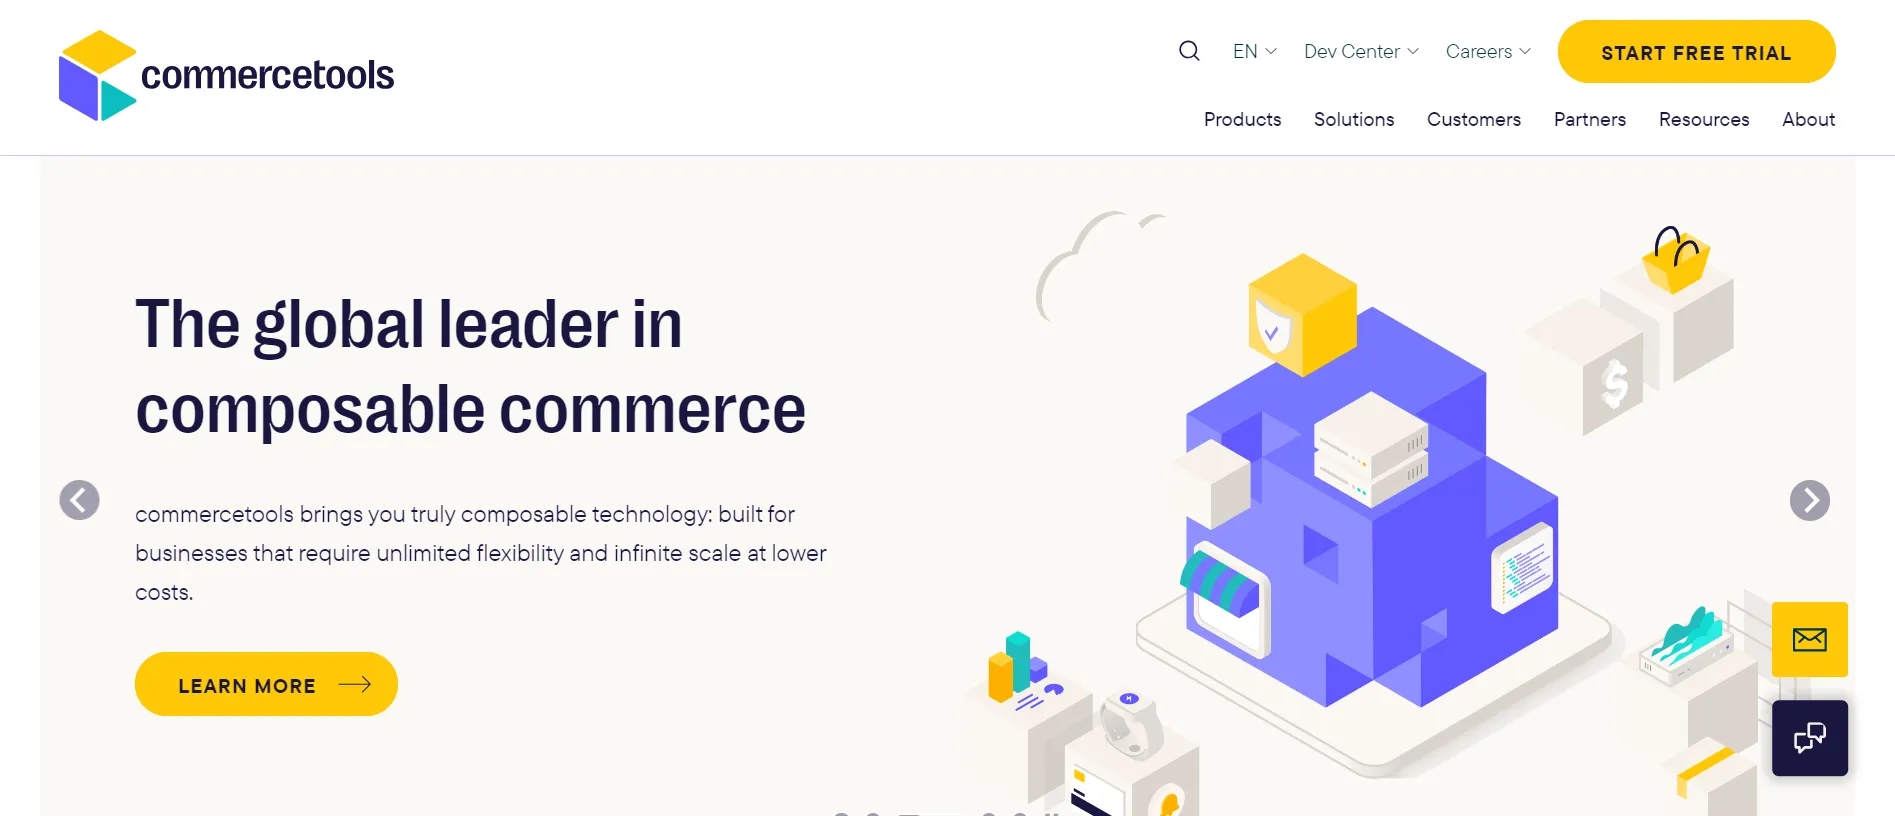 commercetools homepage